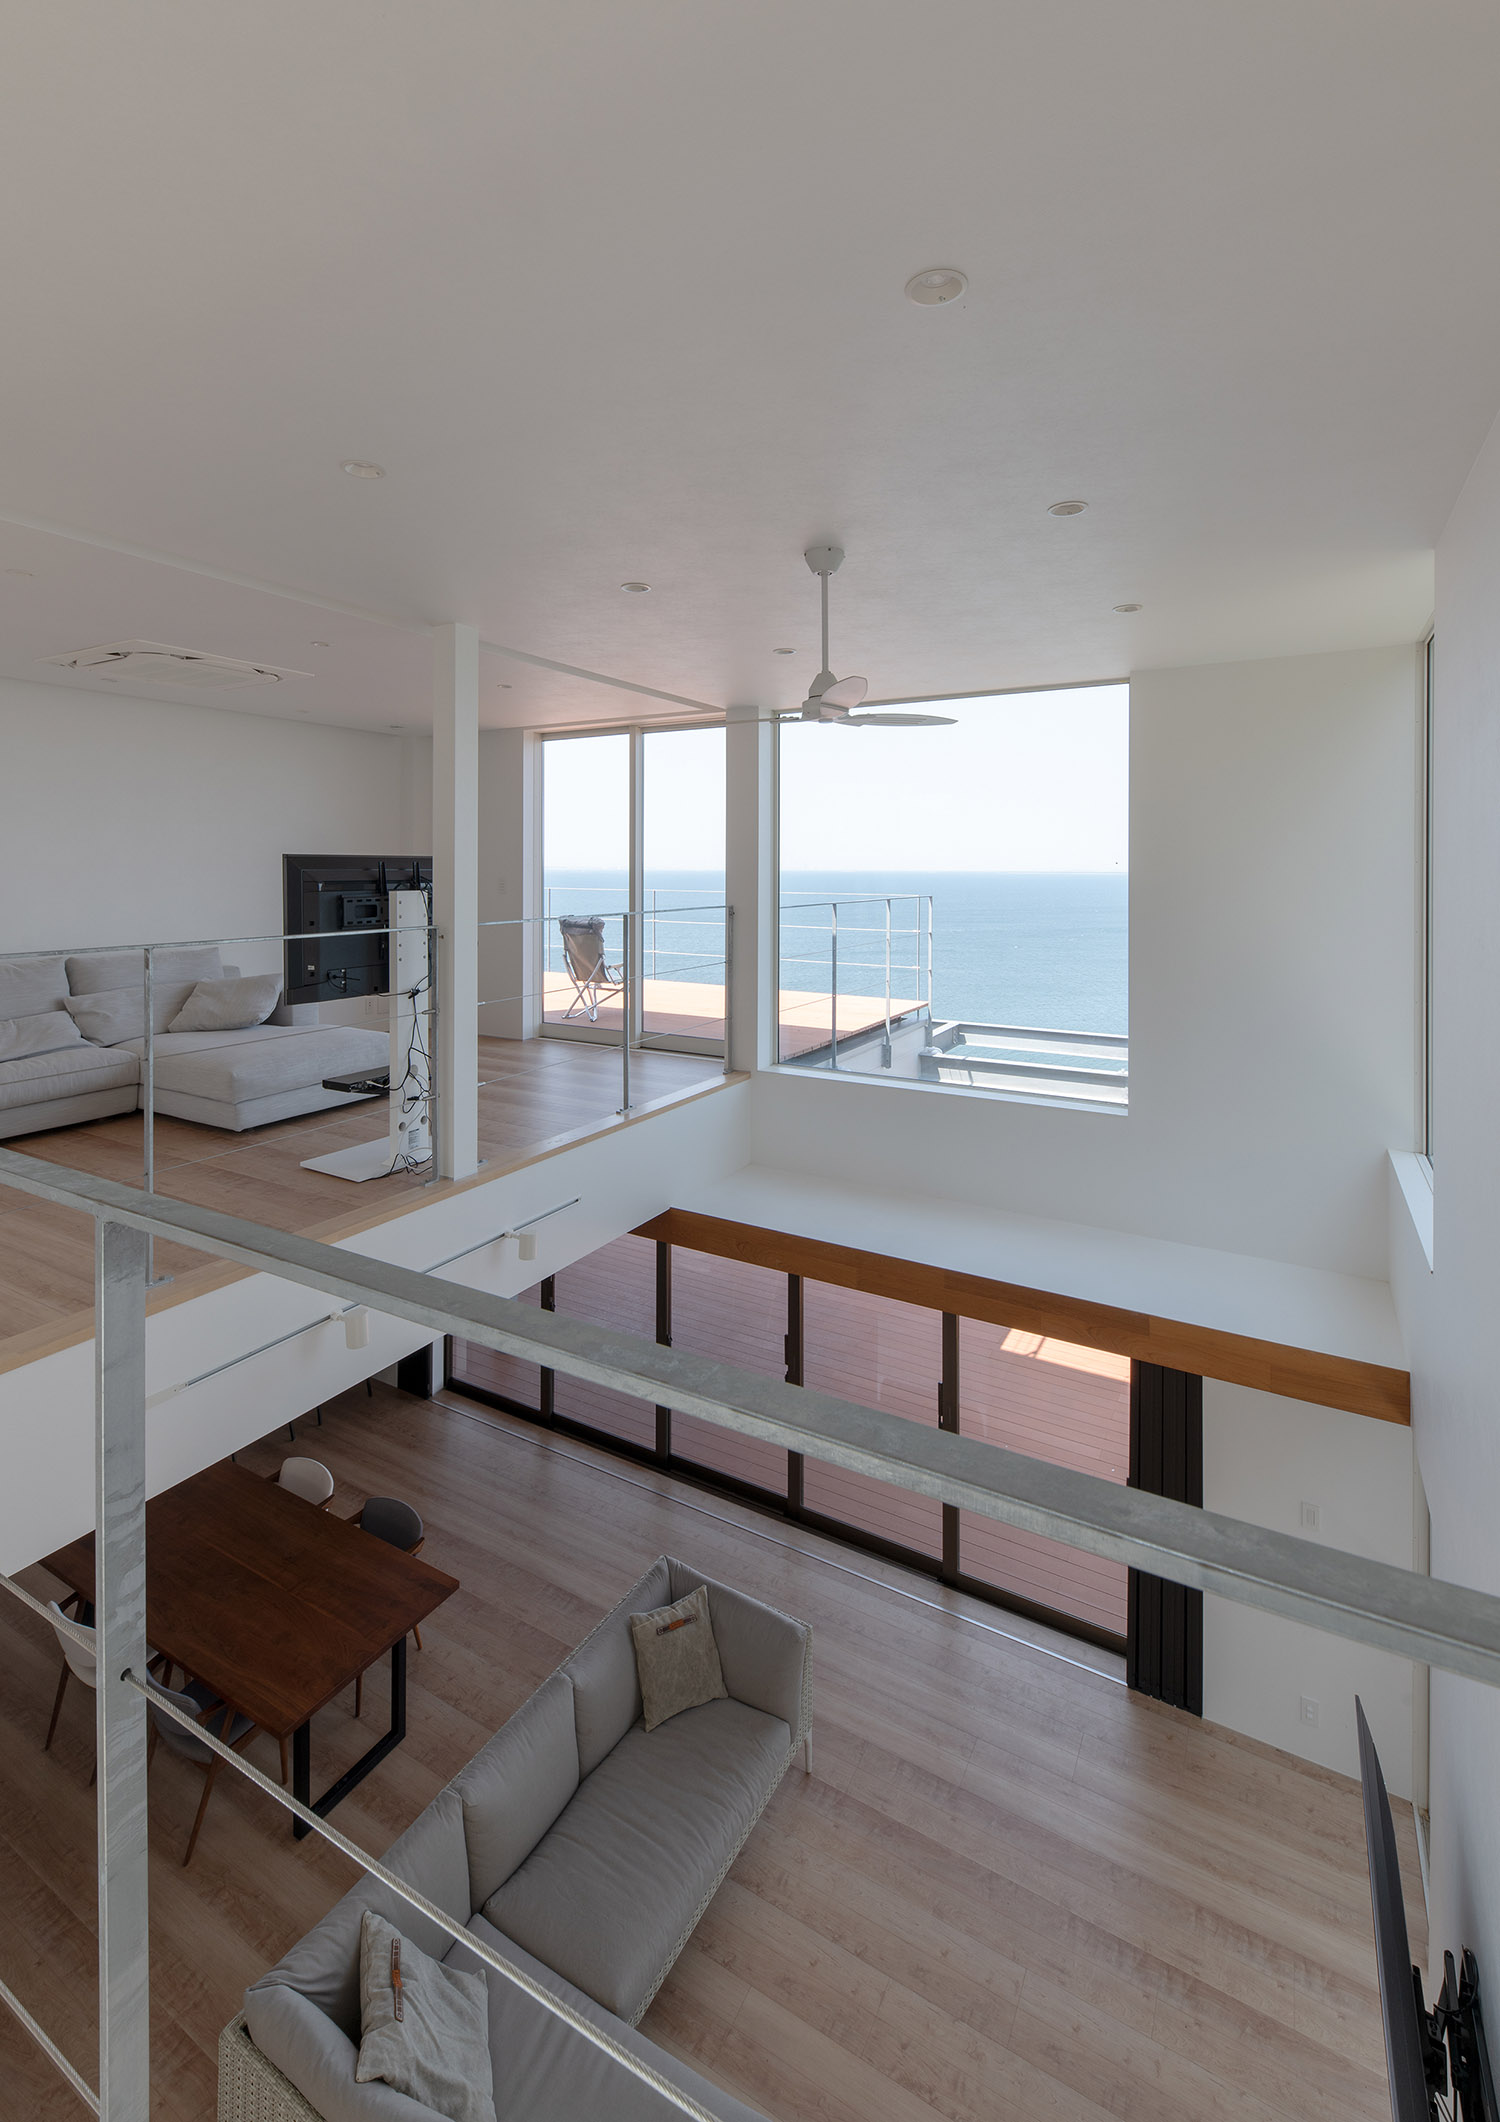 天井にシーリングファンを取り付けた、窓から海が見える開放的なLDK・デザイン住宅